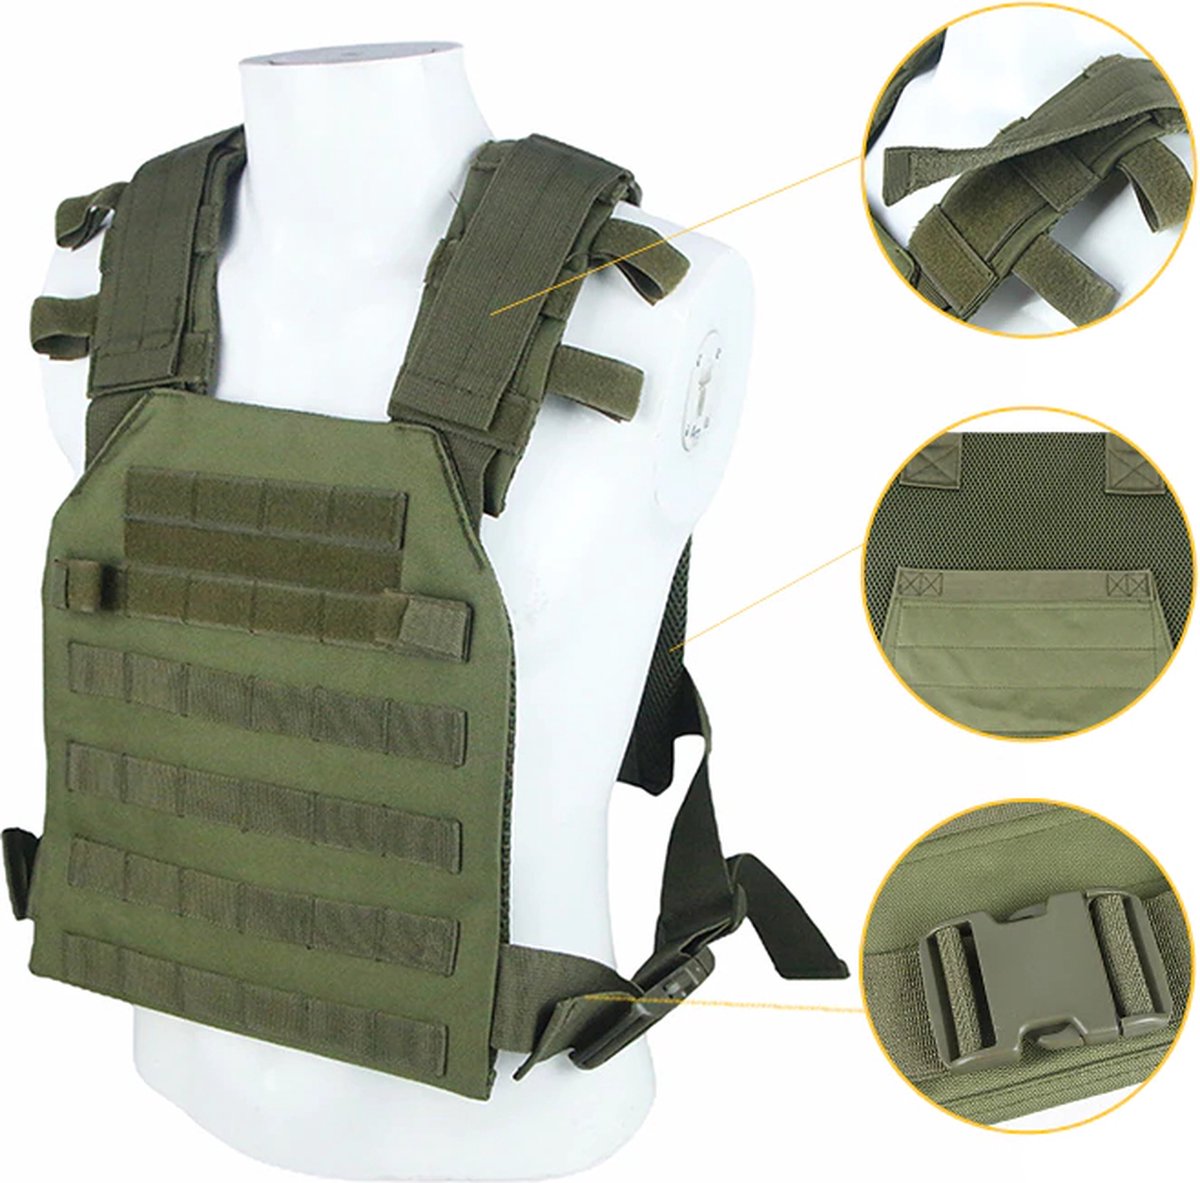 LiberTac Plate Carrier groen - tactical vest - MOLLE - voor ballistische en kogelwerende platen.